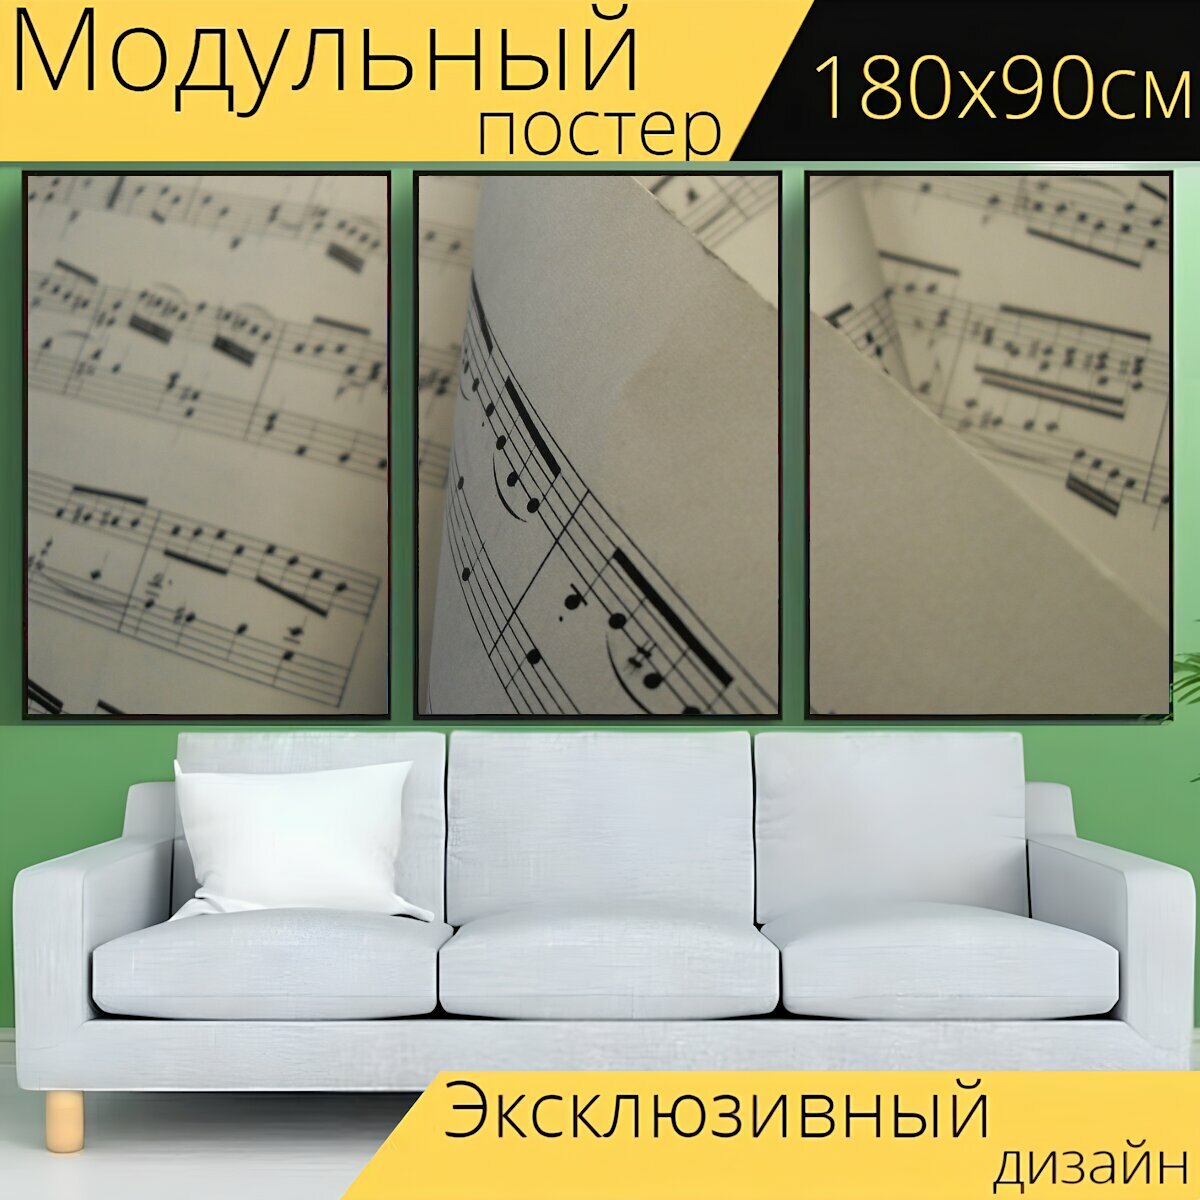 Модульный постер "Ноты, музыка, мелодия" 180 x 90 см. для интерьера